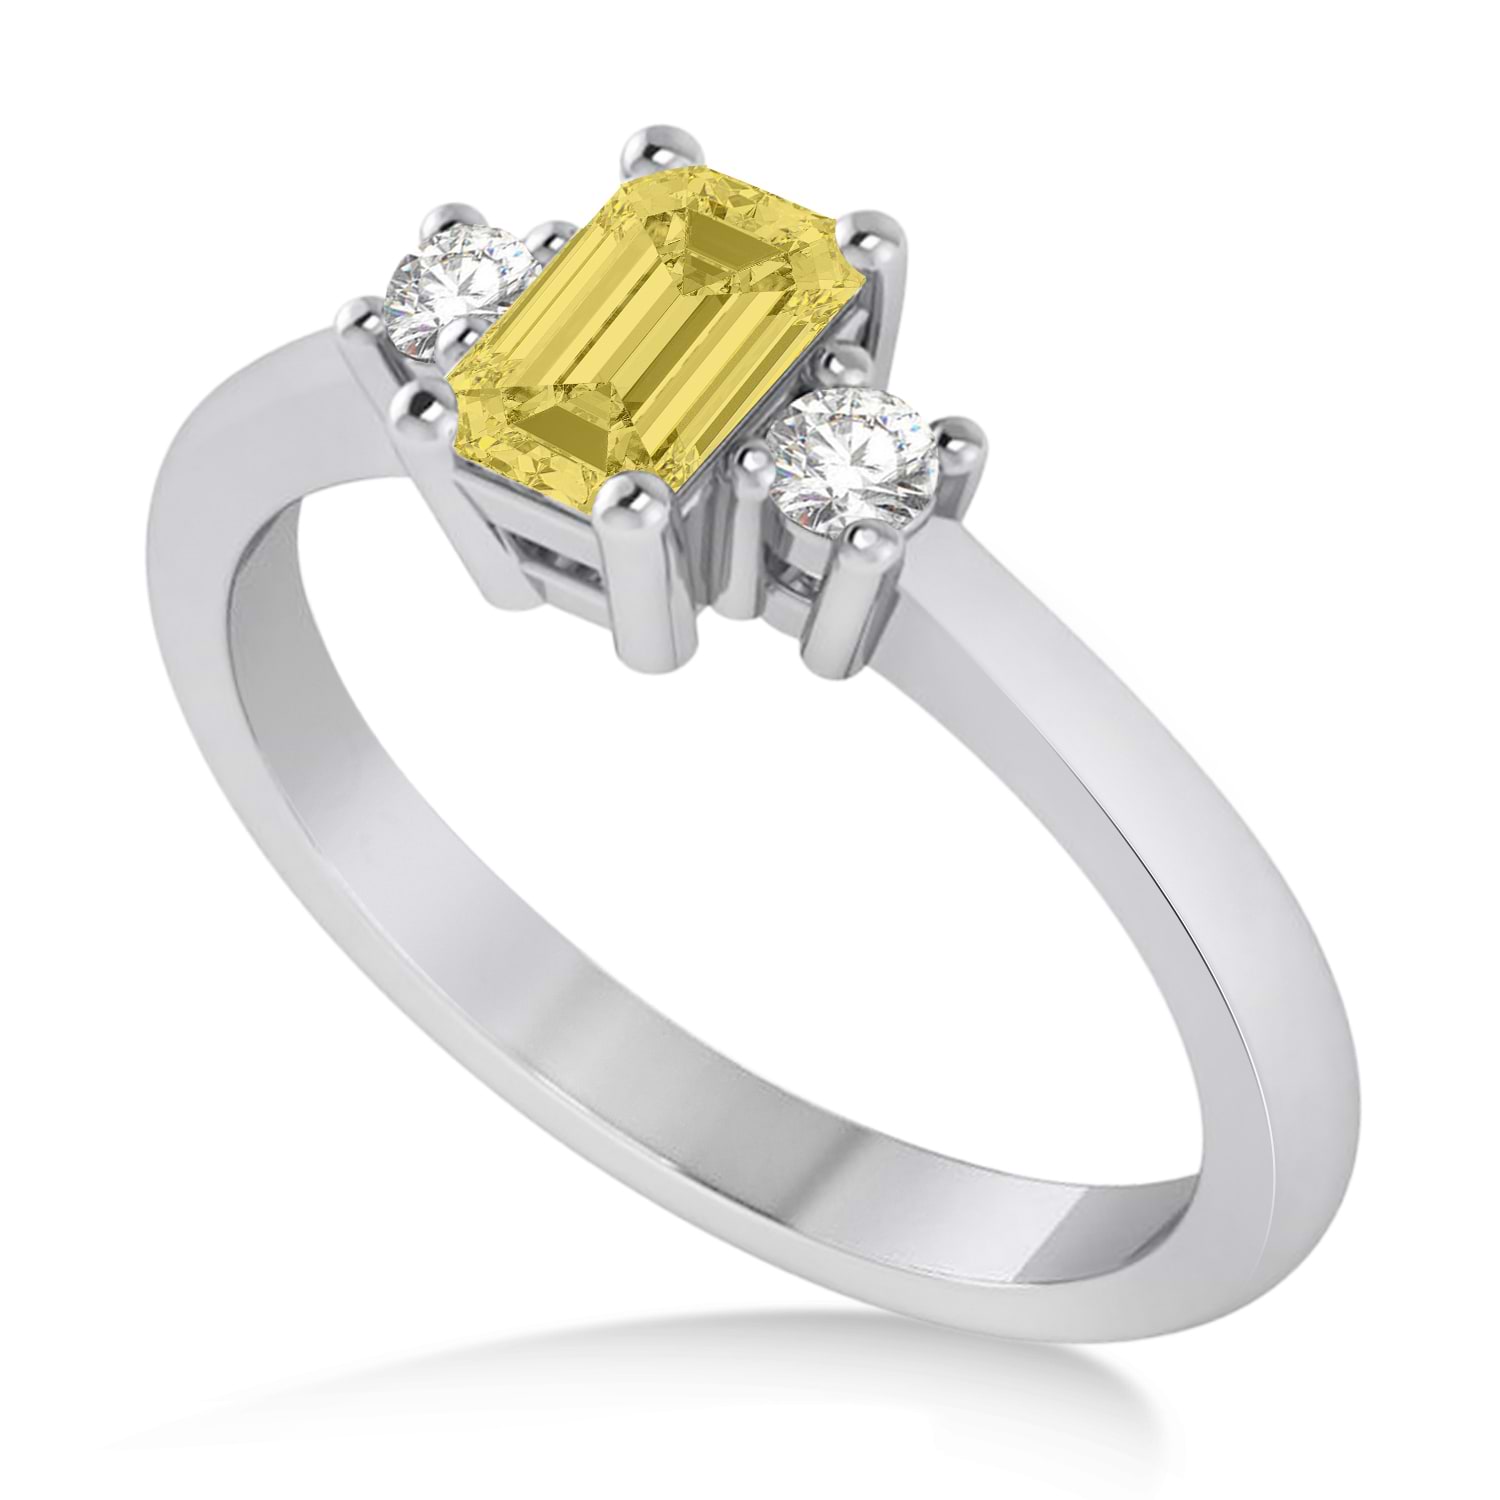 Emerald Yellow & White Diamond Three-Stone Engagement Ring 14k White Gold (0.60ct)